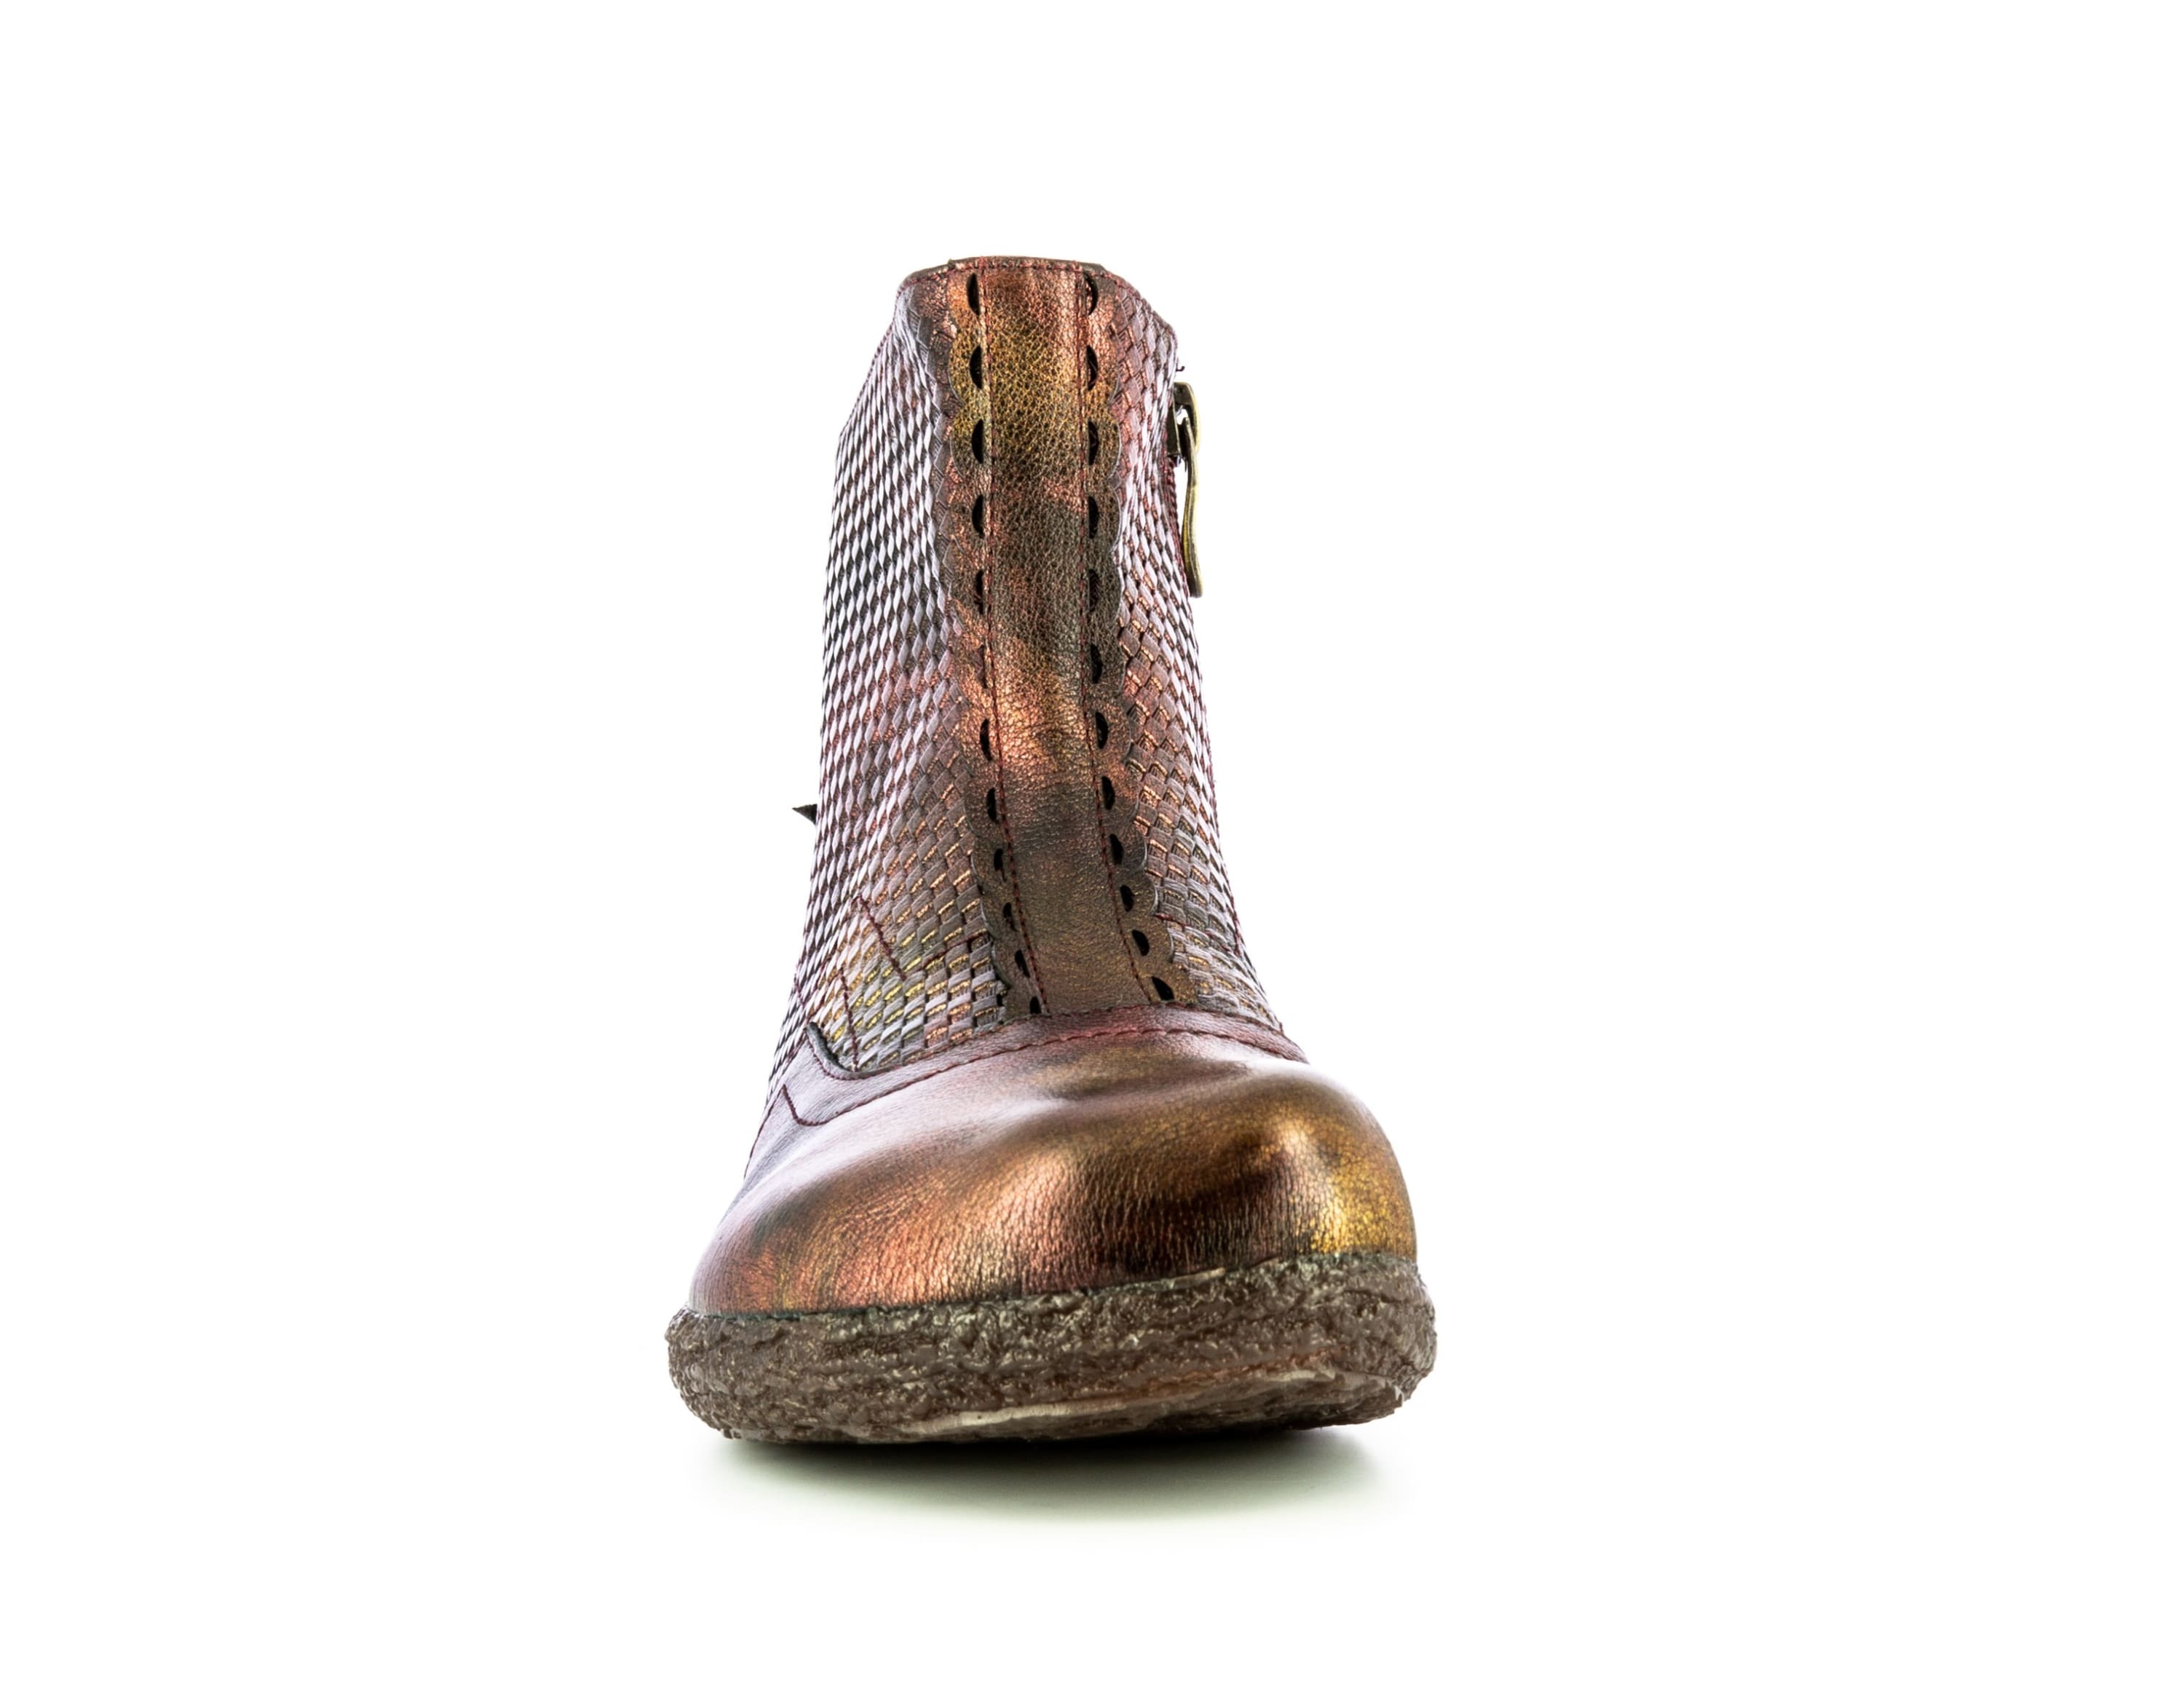 Chaussure GOCNO 187 - Boots